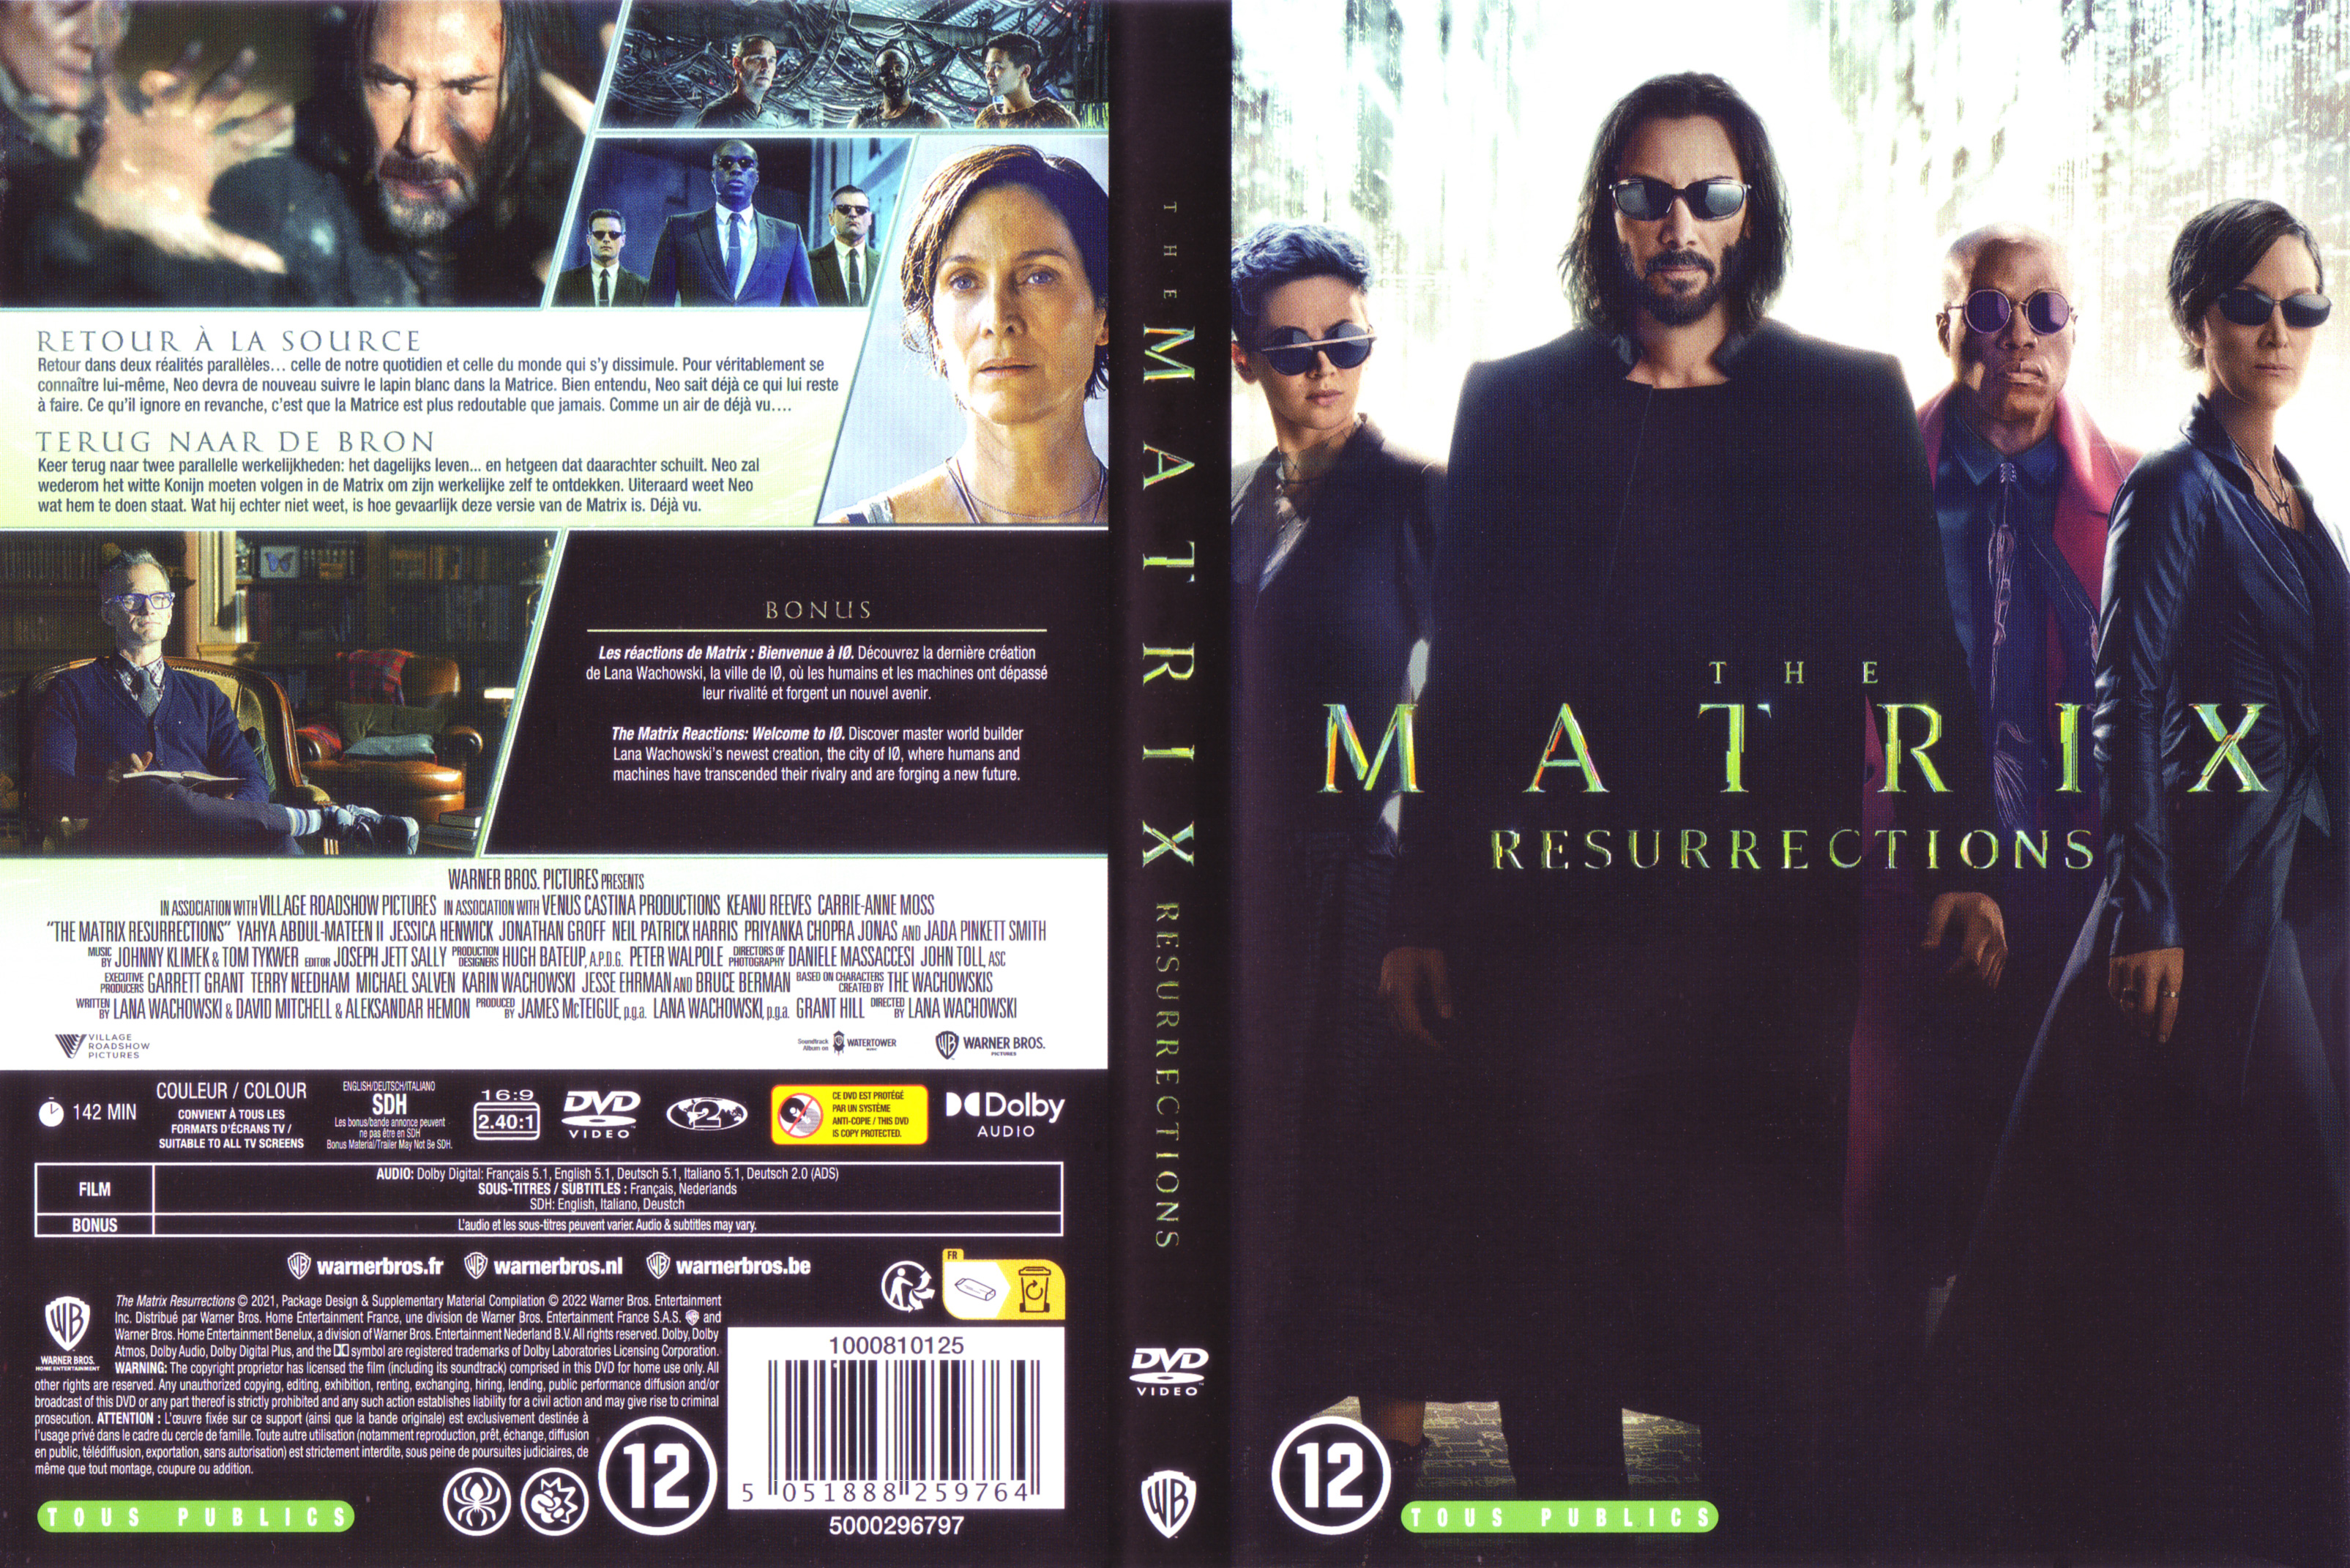 Jaquette DVD The matrix resurrections